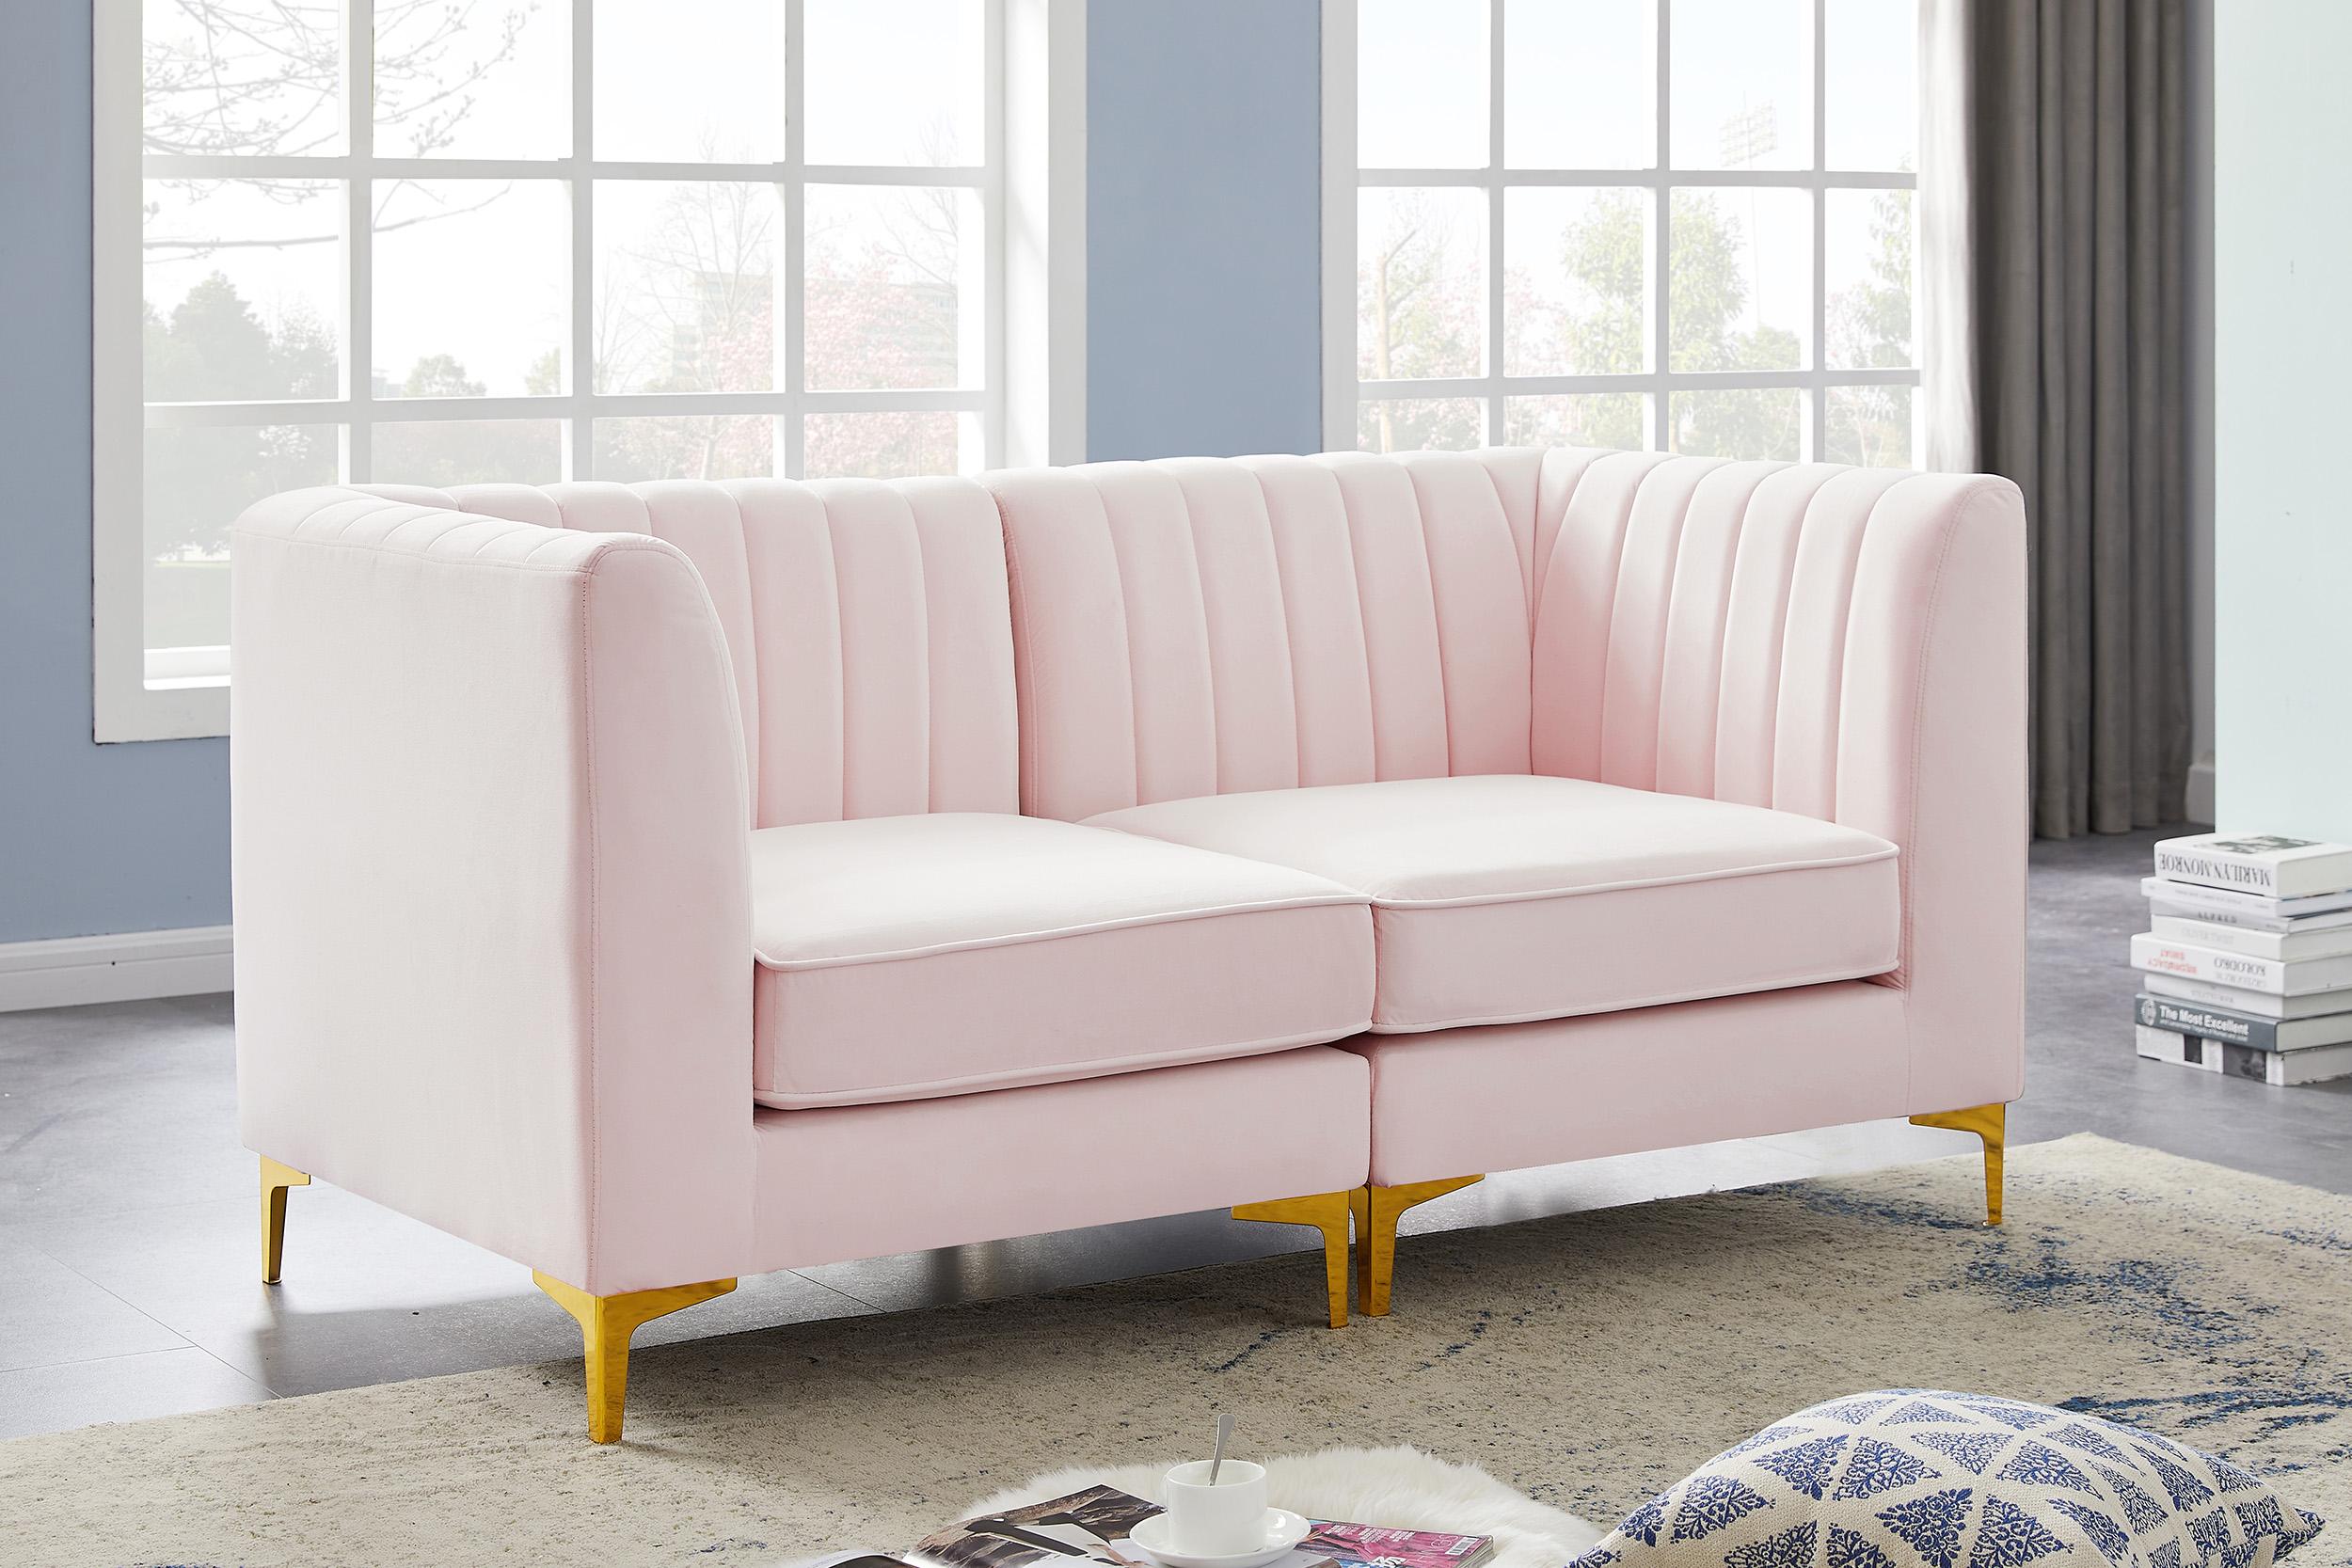 

    
Meridian Furniture ALINA 604Pink-S67 Modular Sectional Sofa Pink 604Pink-S67
